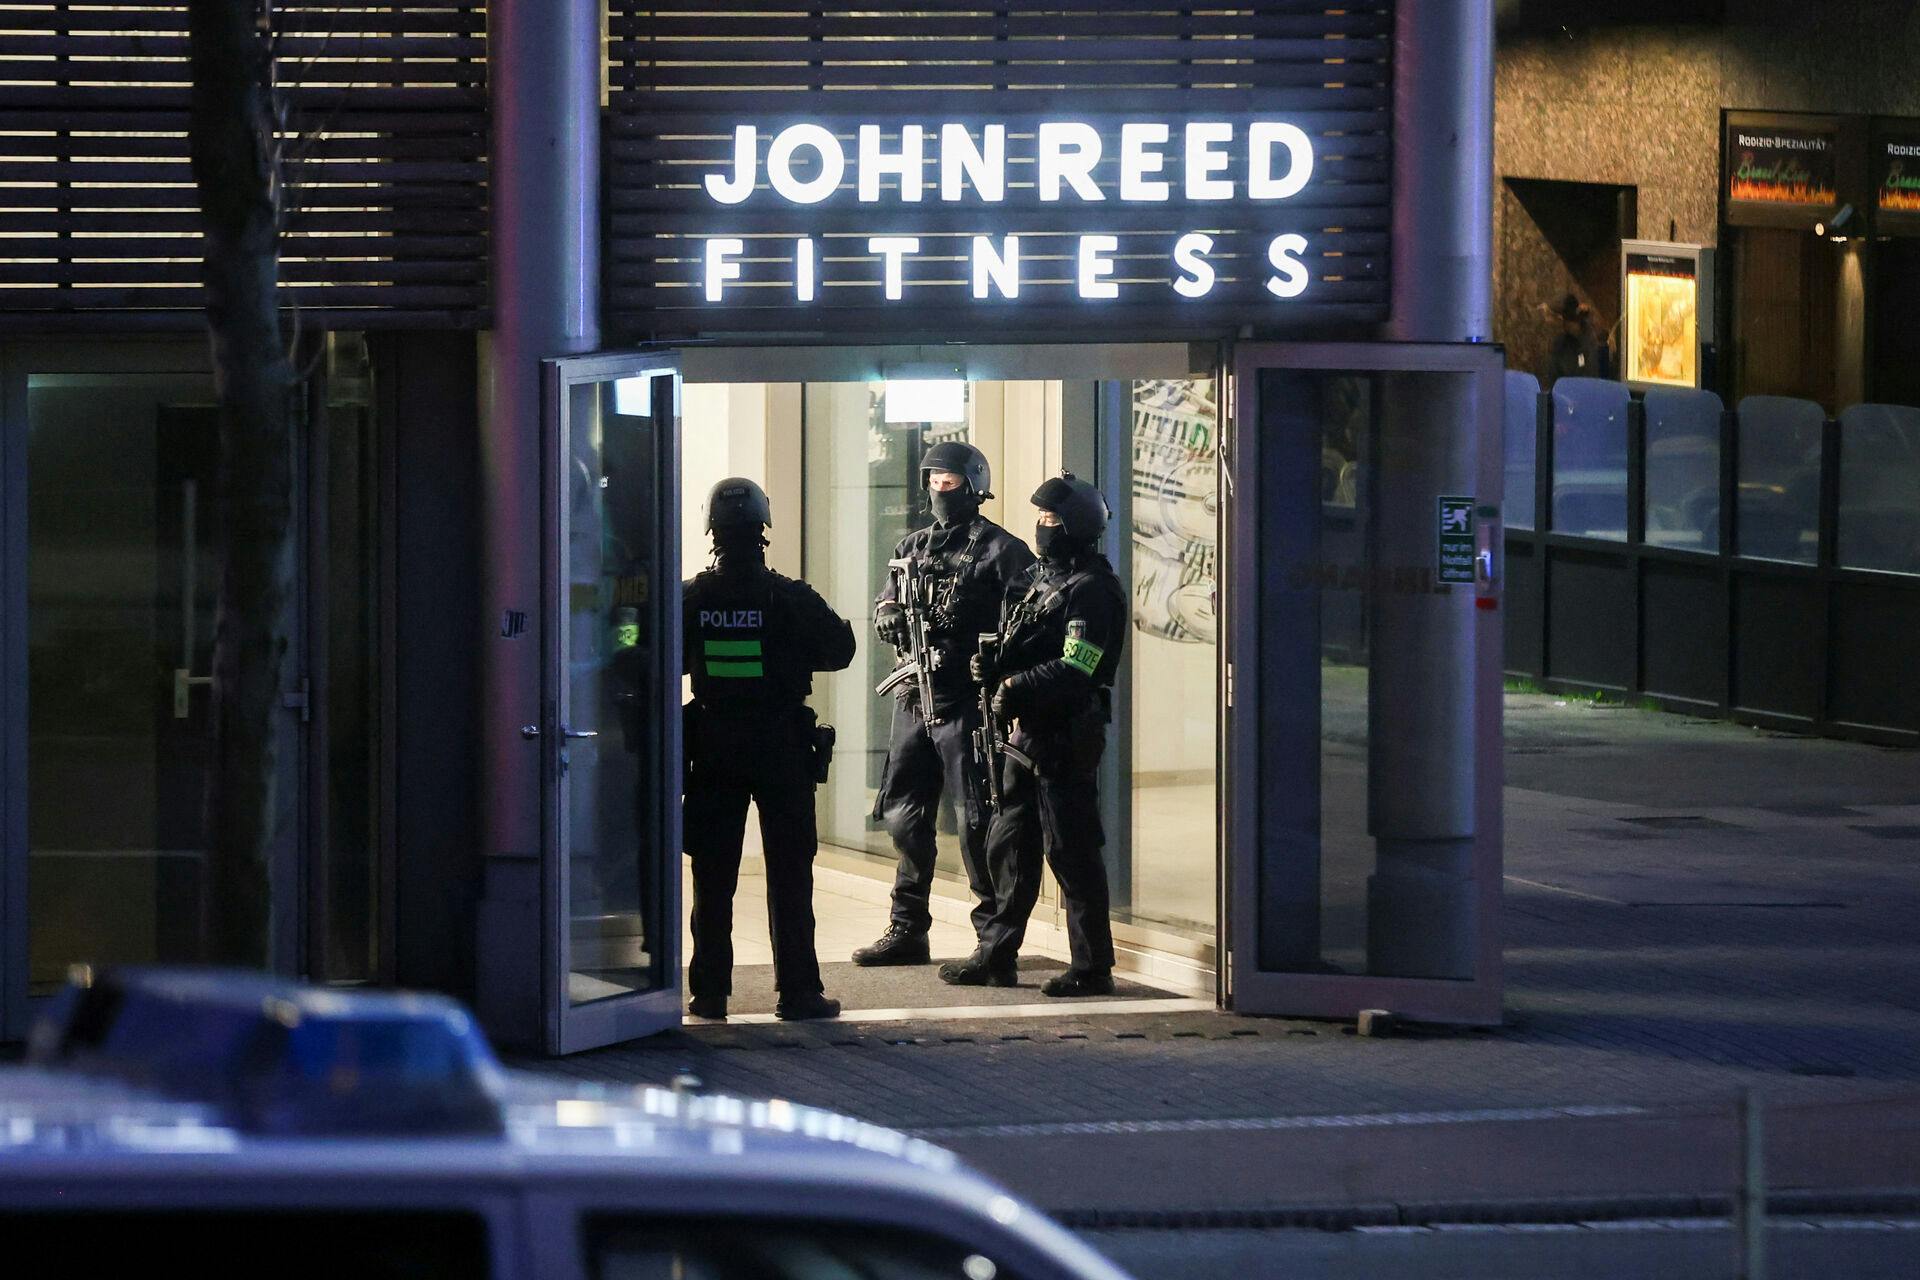 Specialstyrker og over 100 politifolk sat ind efter knivangreb i tysk fitnesscenter. Flere er alvorligt såret.